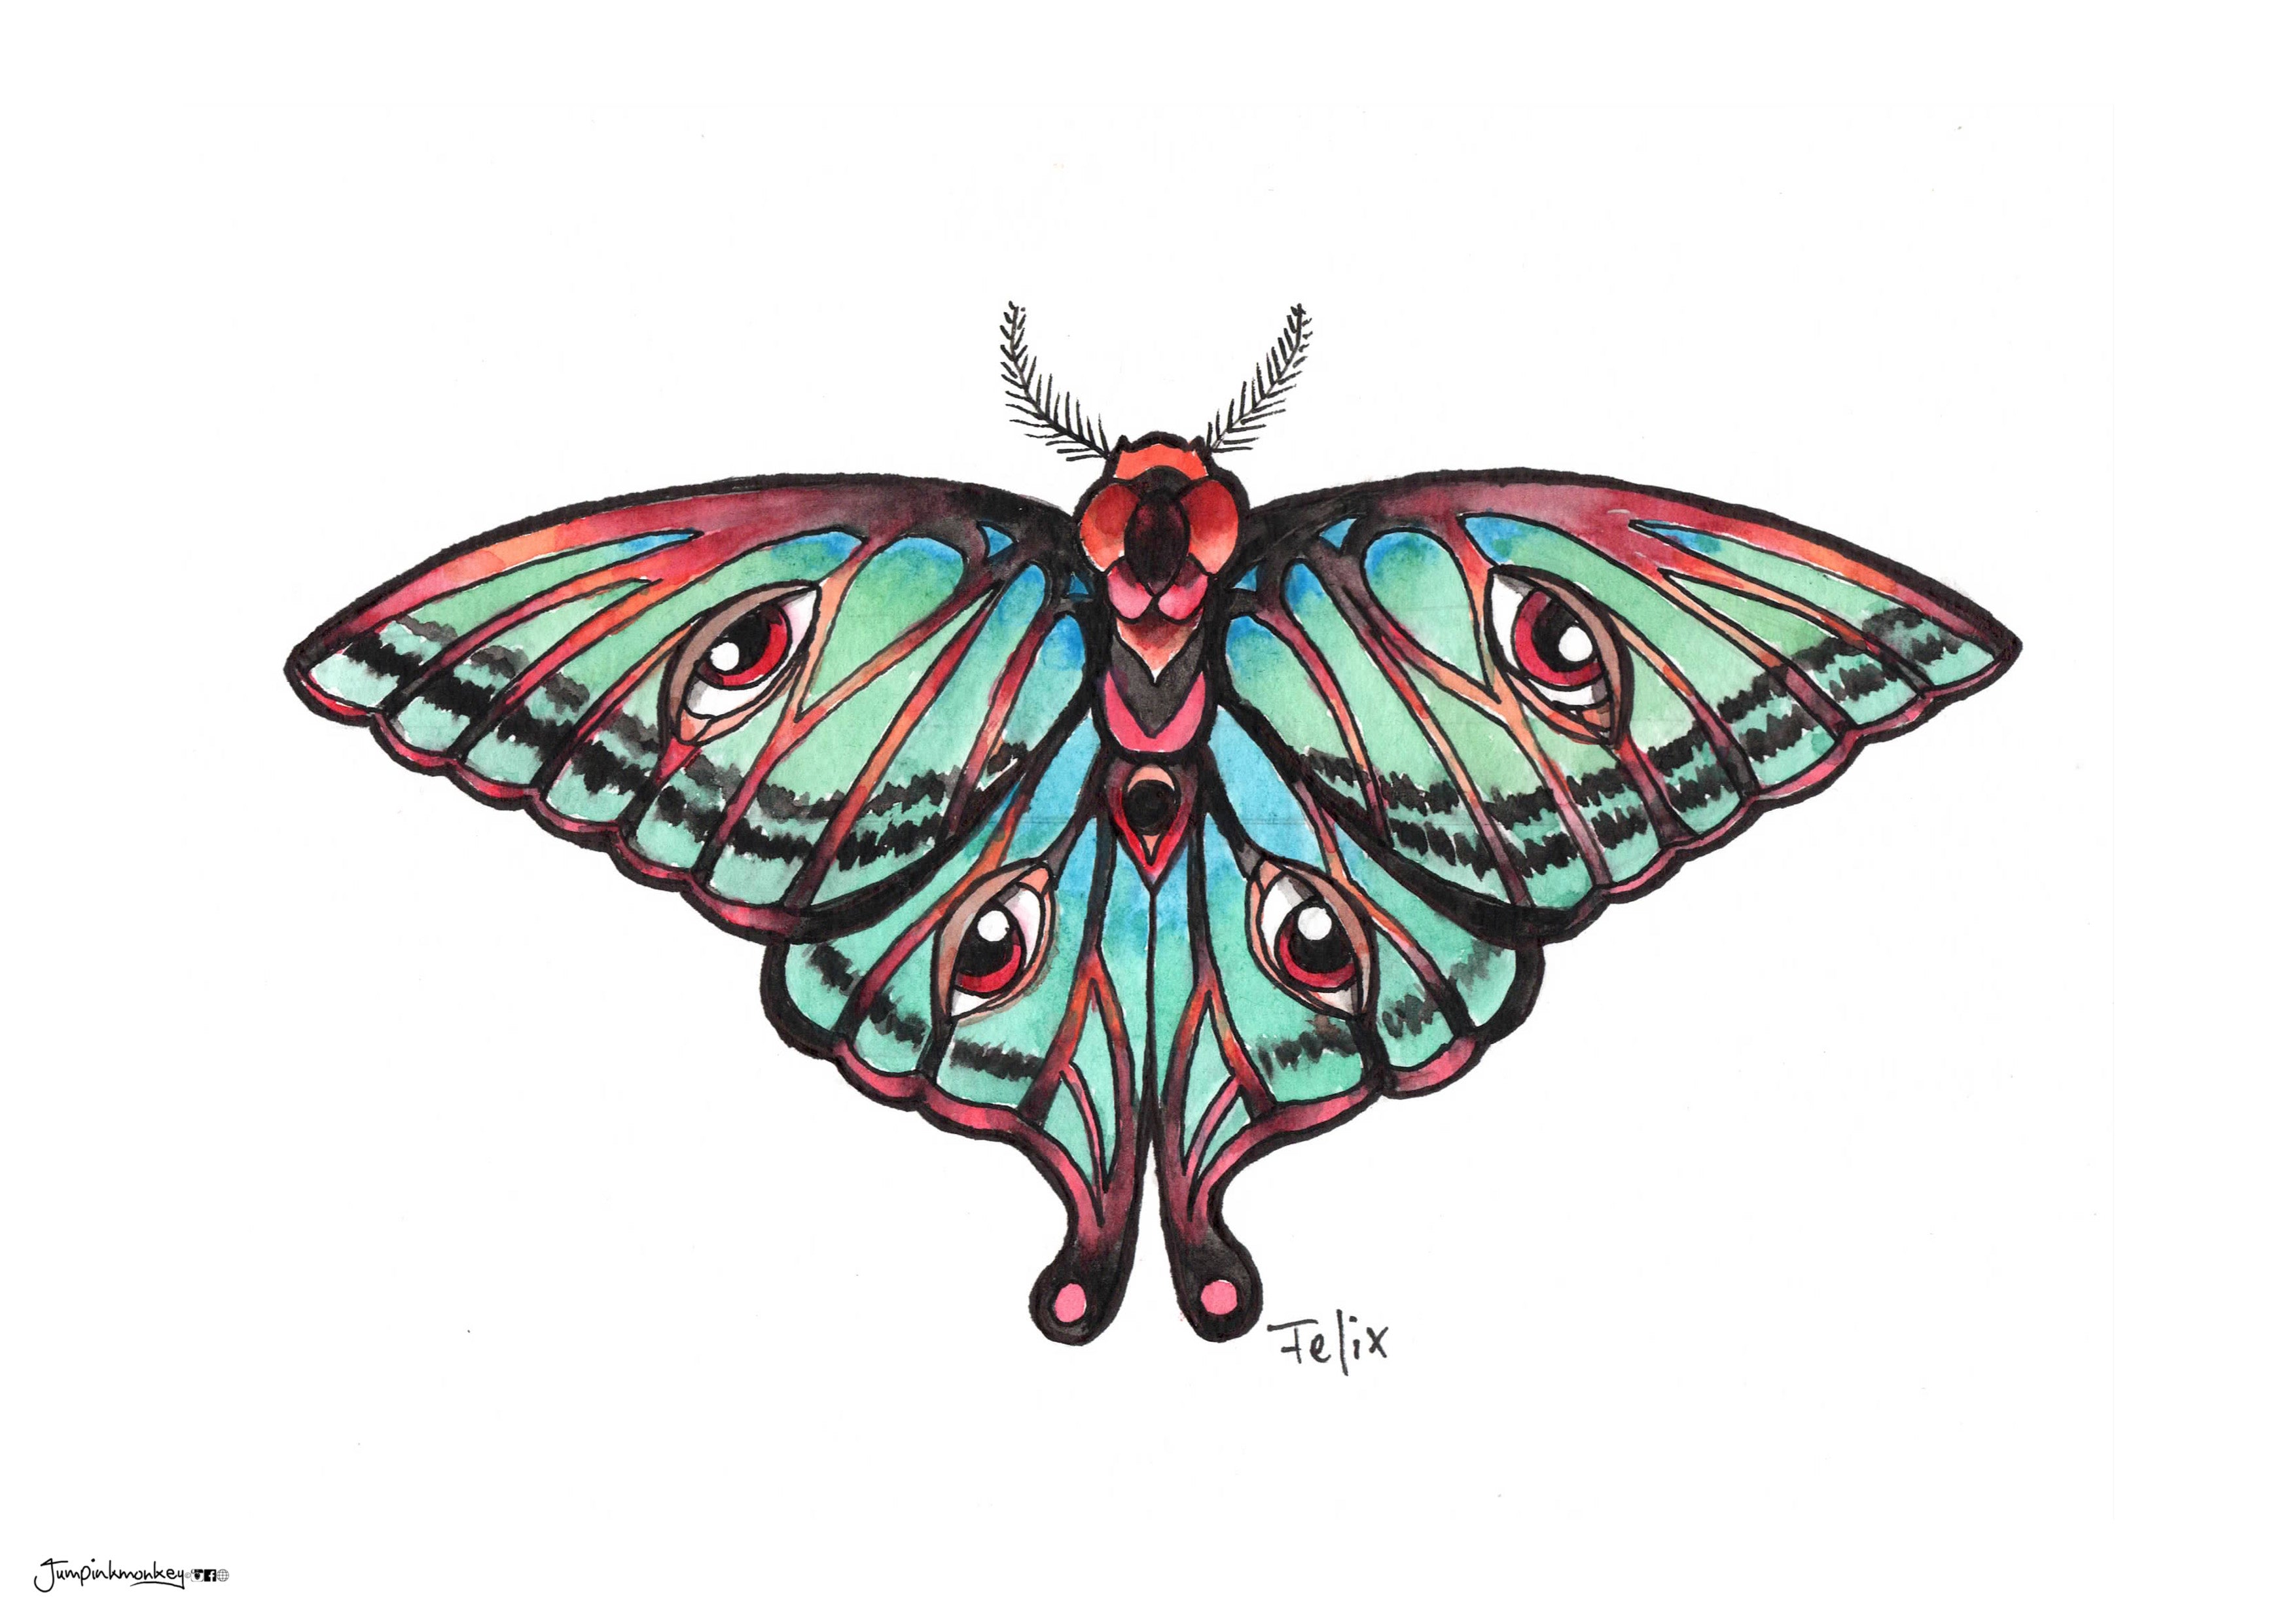 Moth in full color